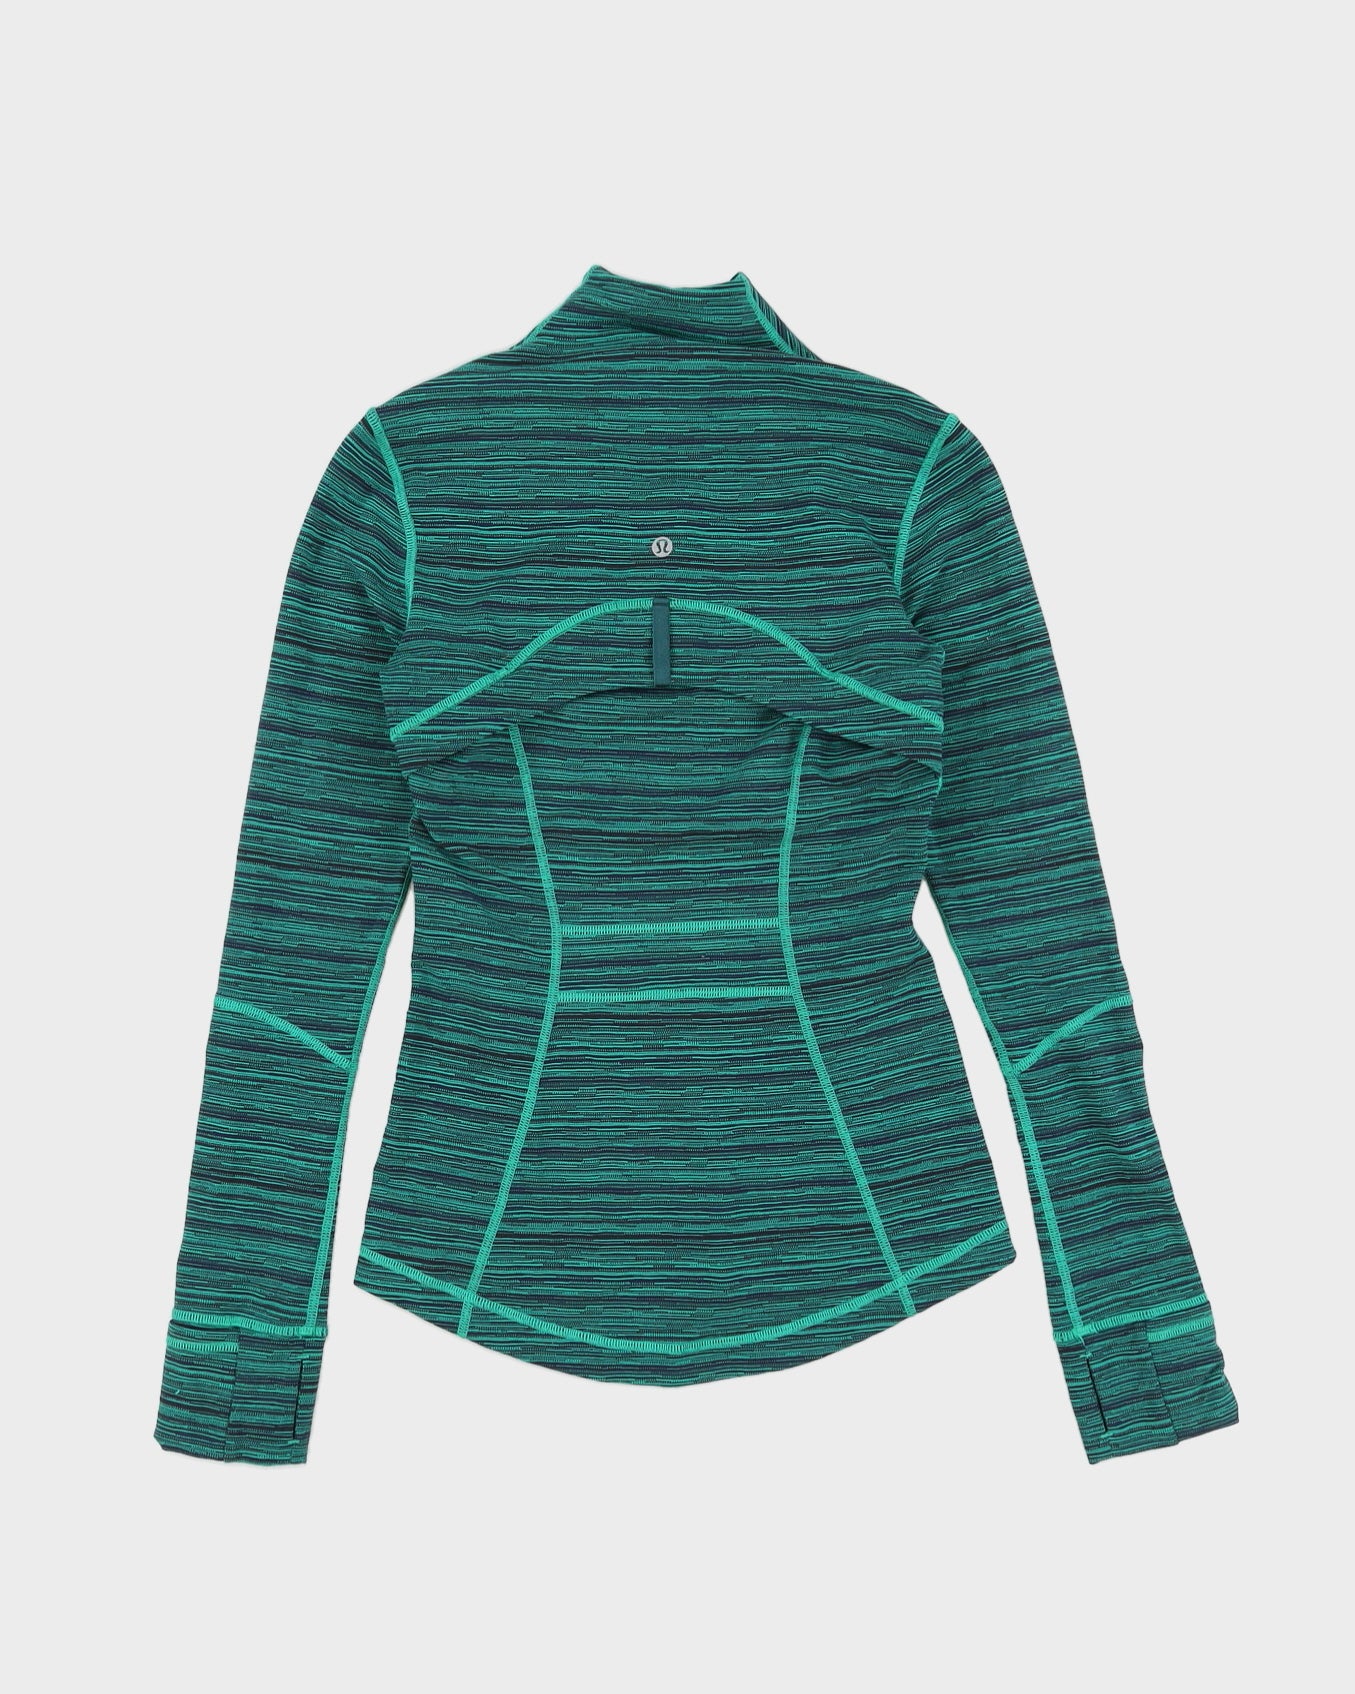 Lululemon Green Melange Sports Jacket - XS